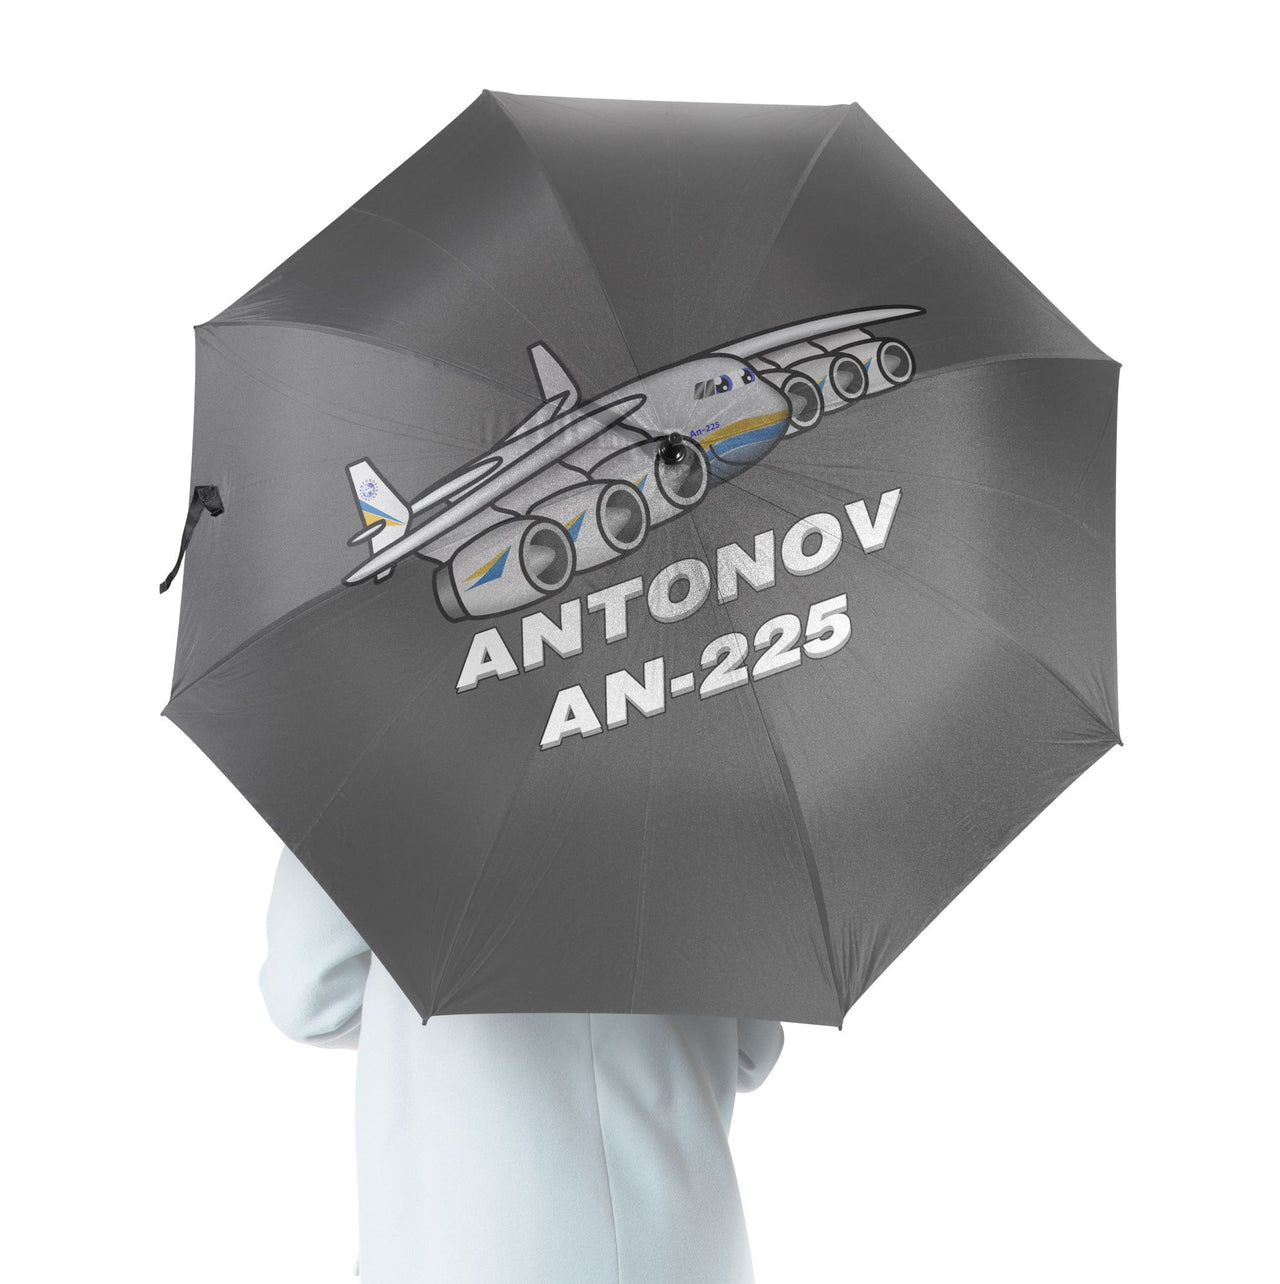 Antonov AN-225 (25) Designed Umbrella